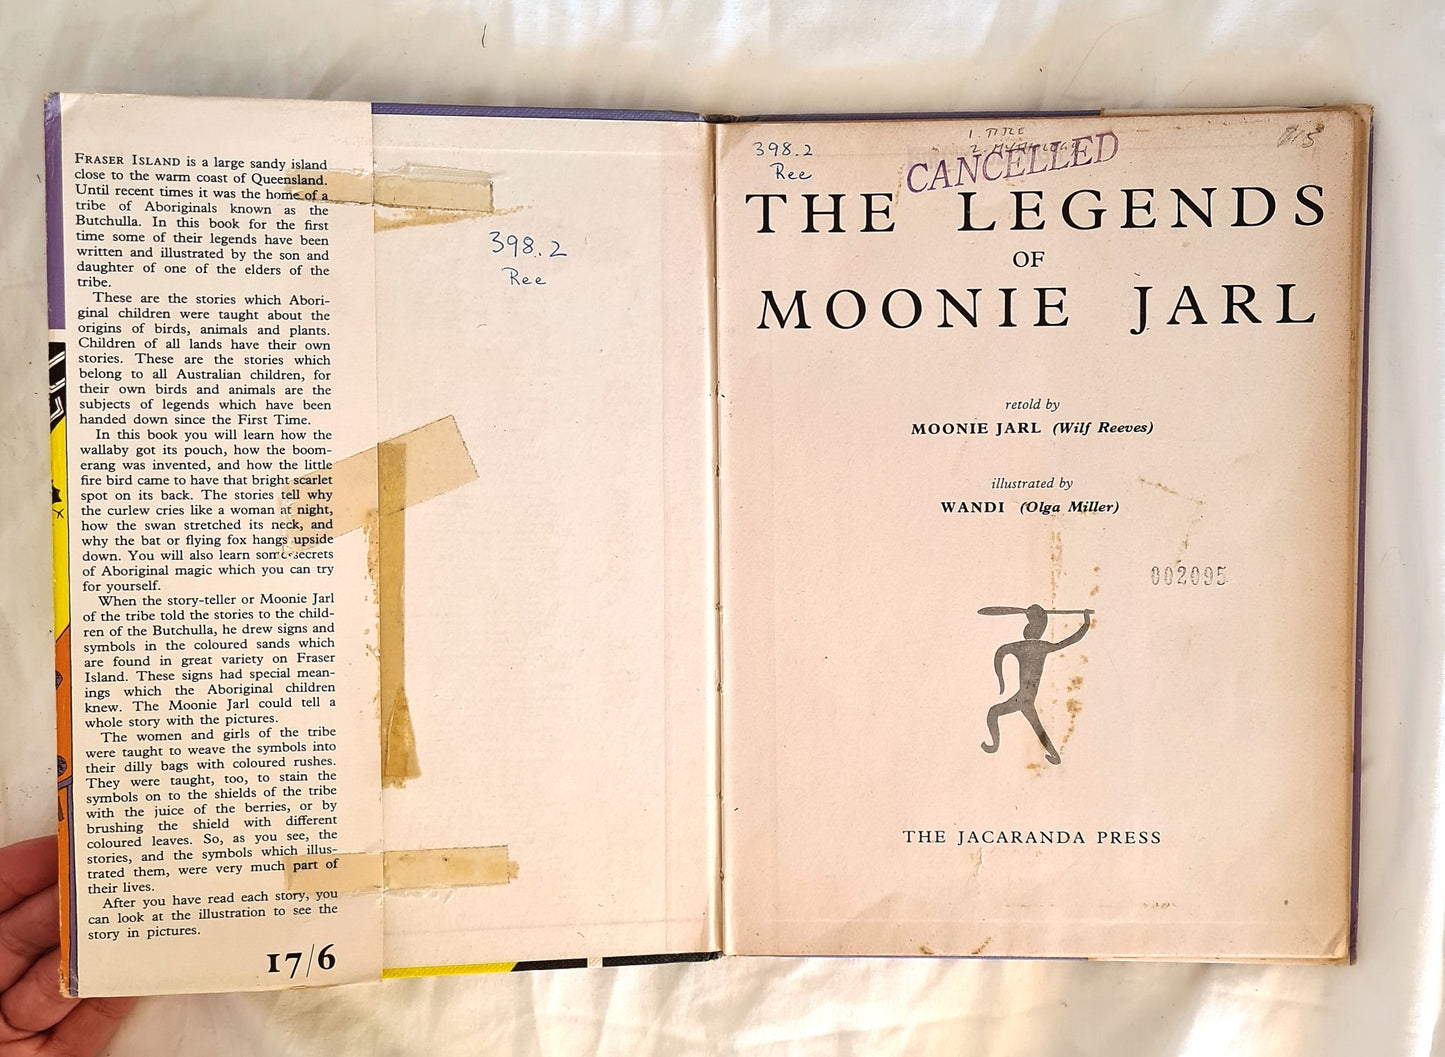 The Legends of Moonie Jarl by Moonie Jarl (Wilf Reeves) and Wandi (Olga Miller)